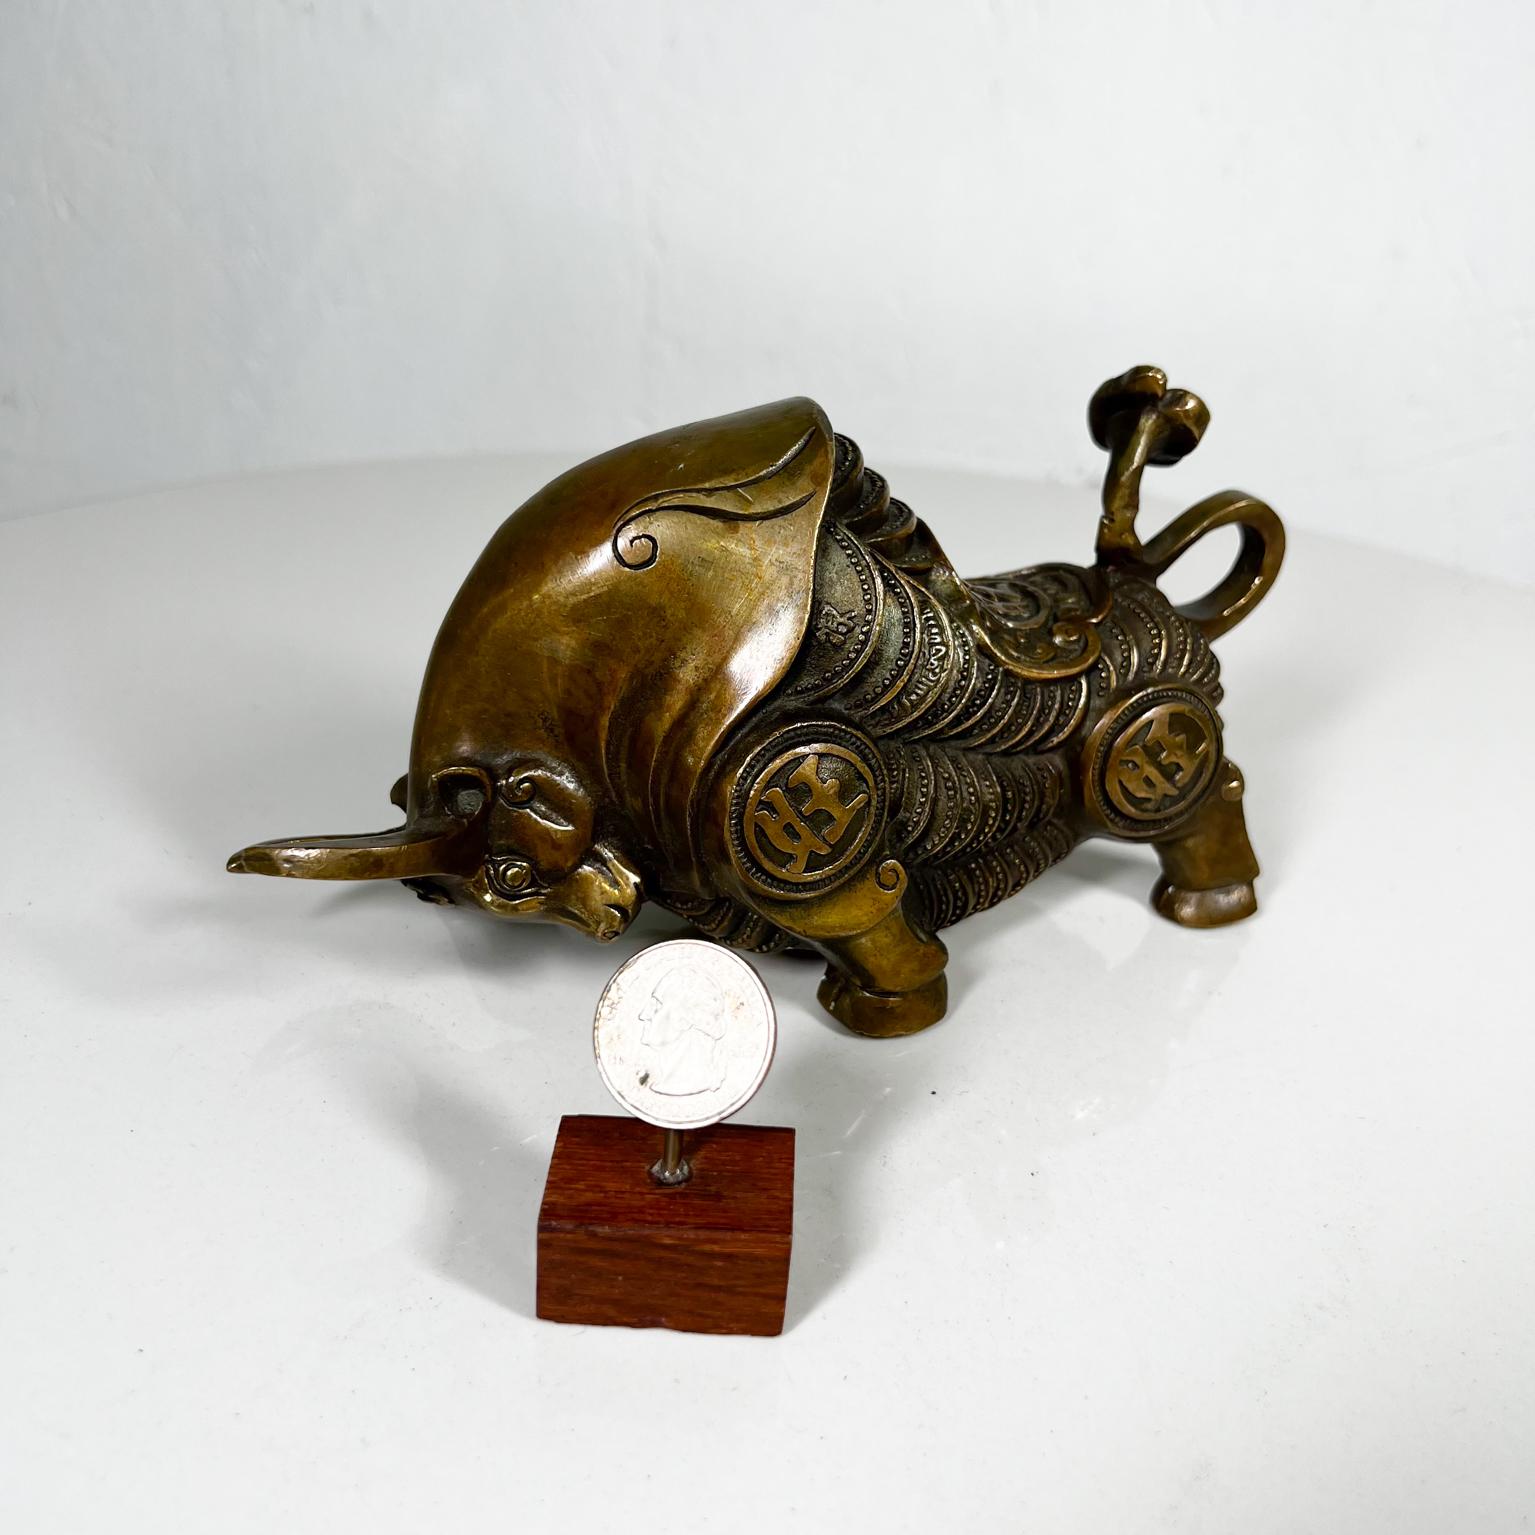 Sculpture de taureau asiatique en bronze
Feng shui Bronze doré Bourse Taureau Richesse Argent Bœuf
8 p x 3 l x 3,88 haut
Vintage By
Images de la revue.